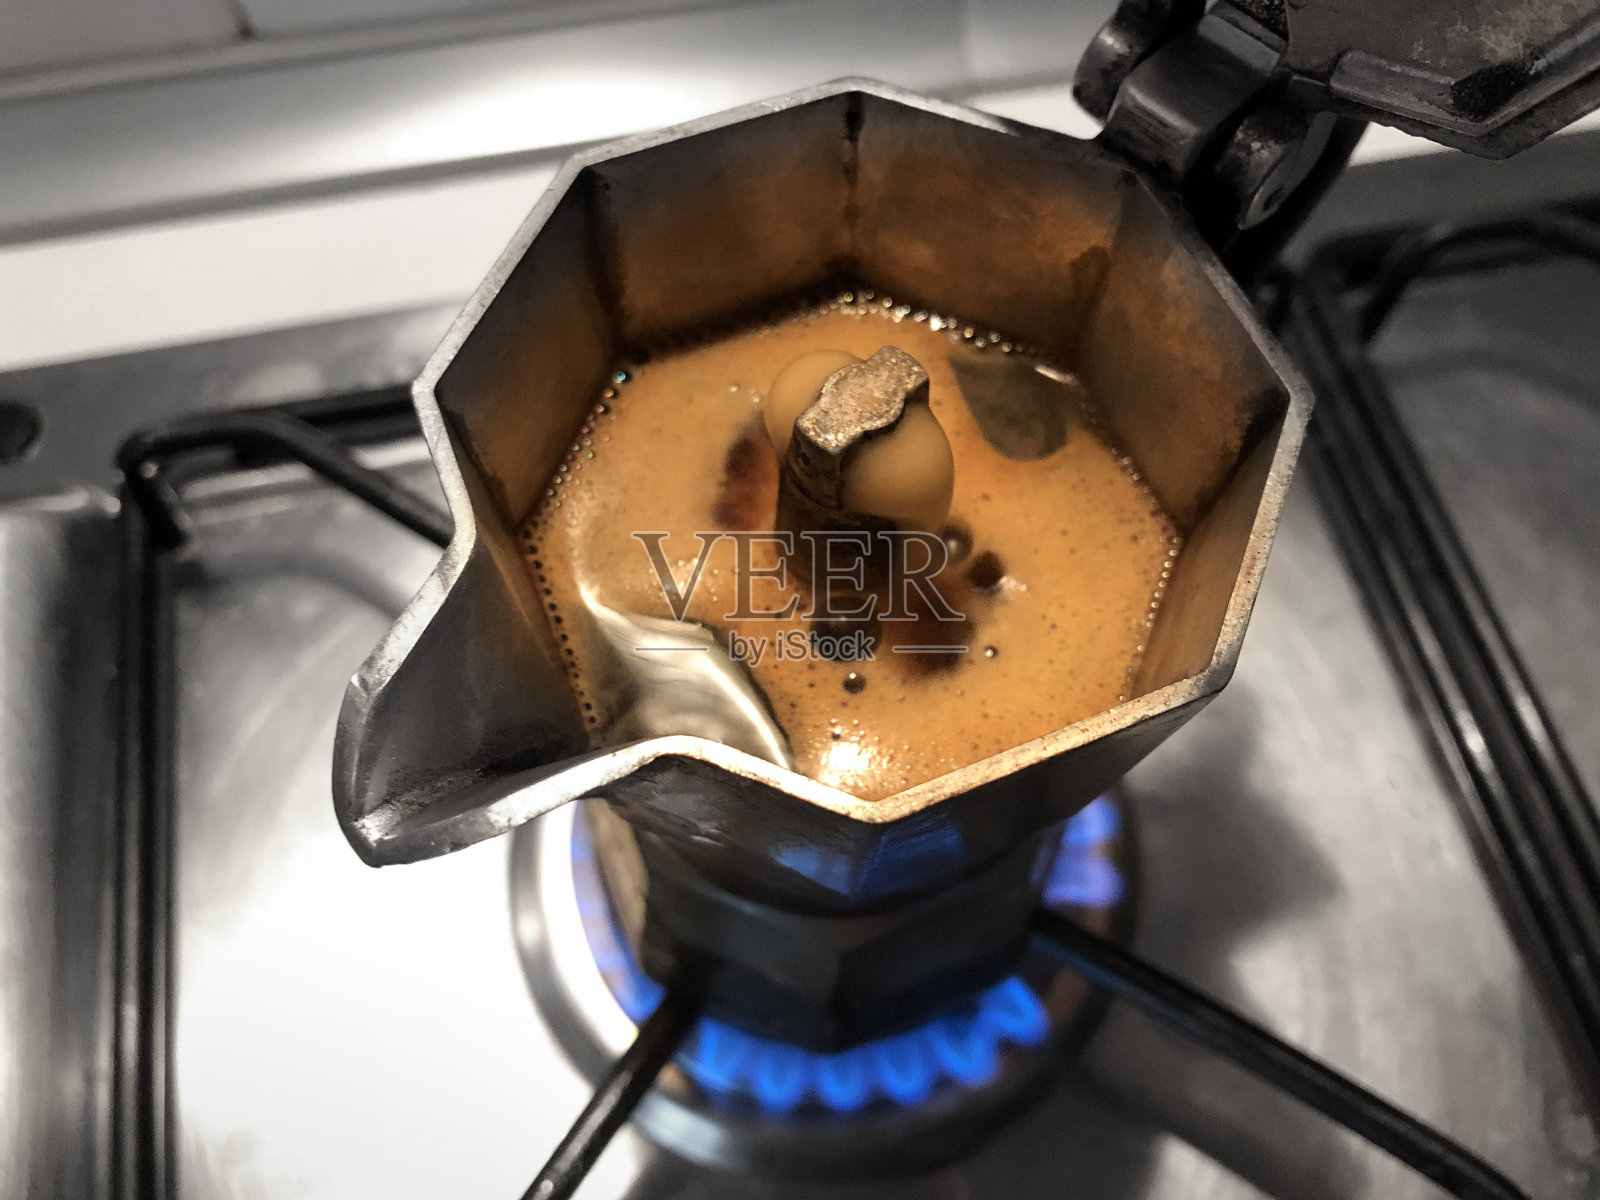 烤炉上放着摩卡咖啡。传统的意大利咖啡机。照片摄影图片